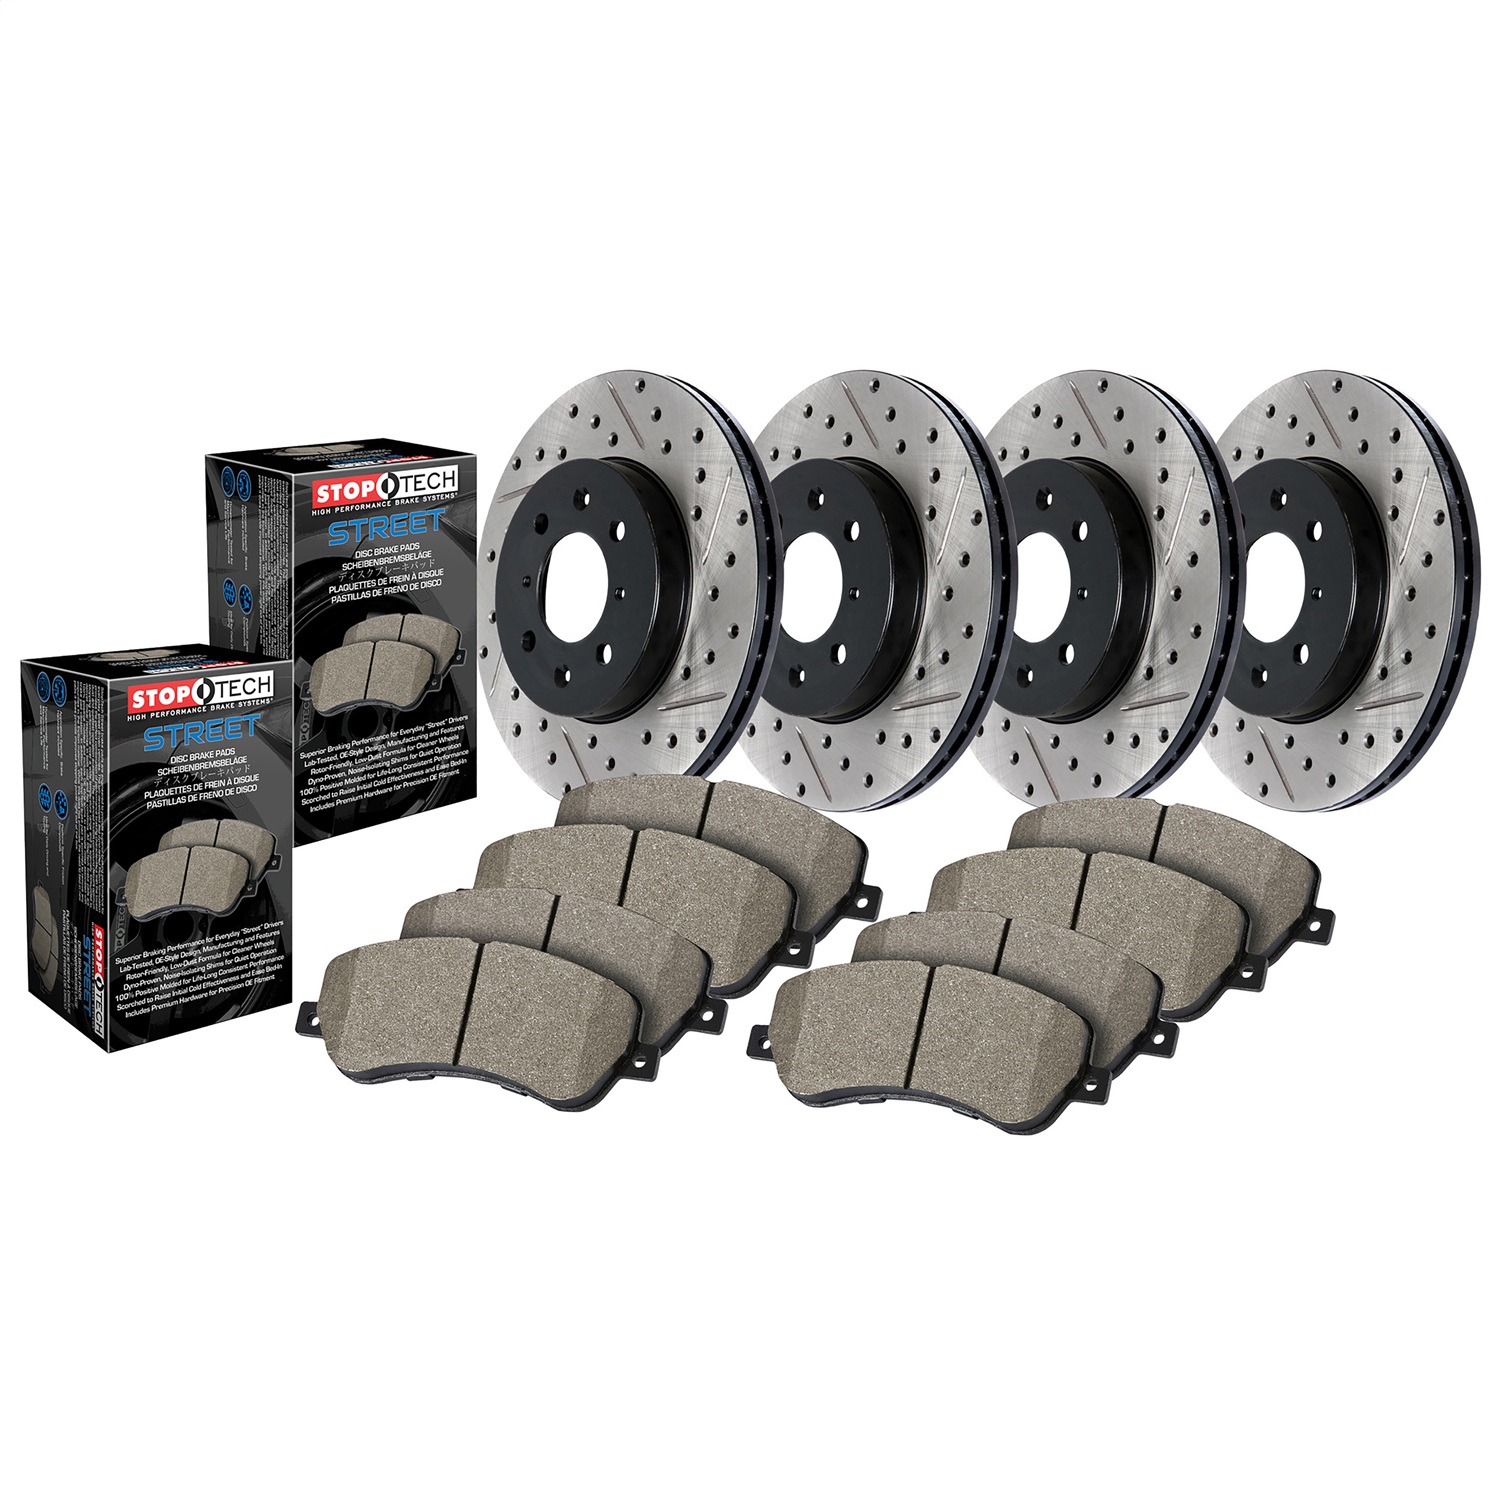 StopTech 935.45016 Disc Brake Upgrade Kit